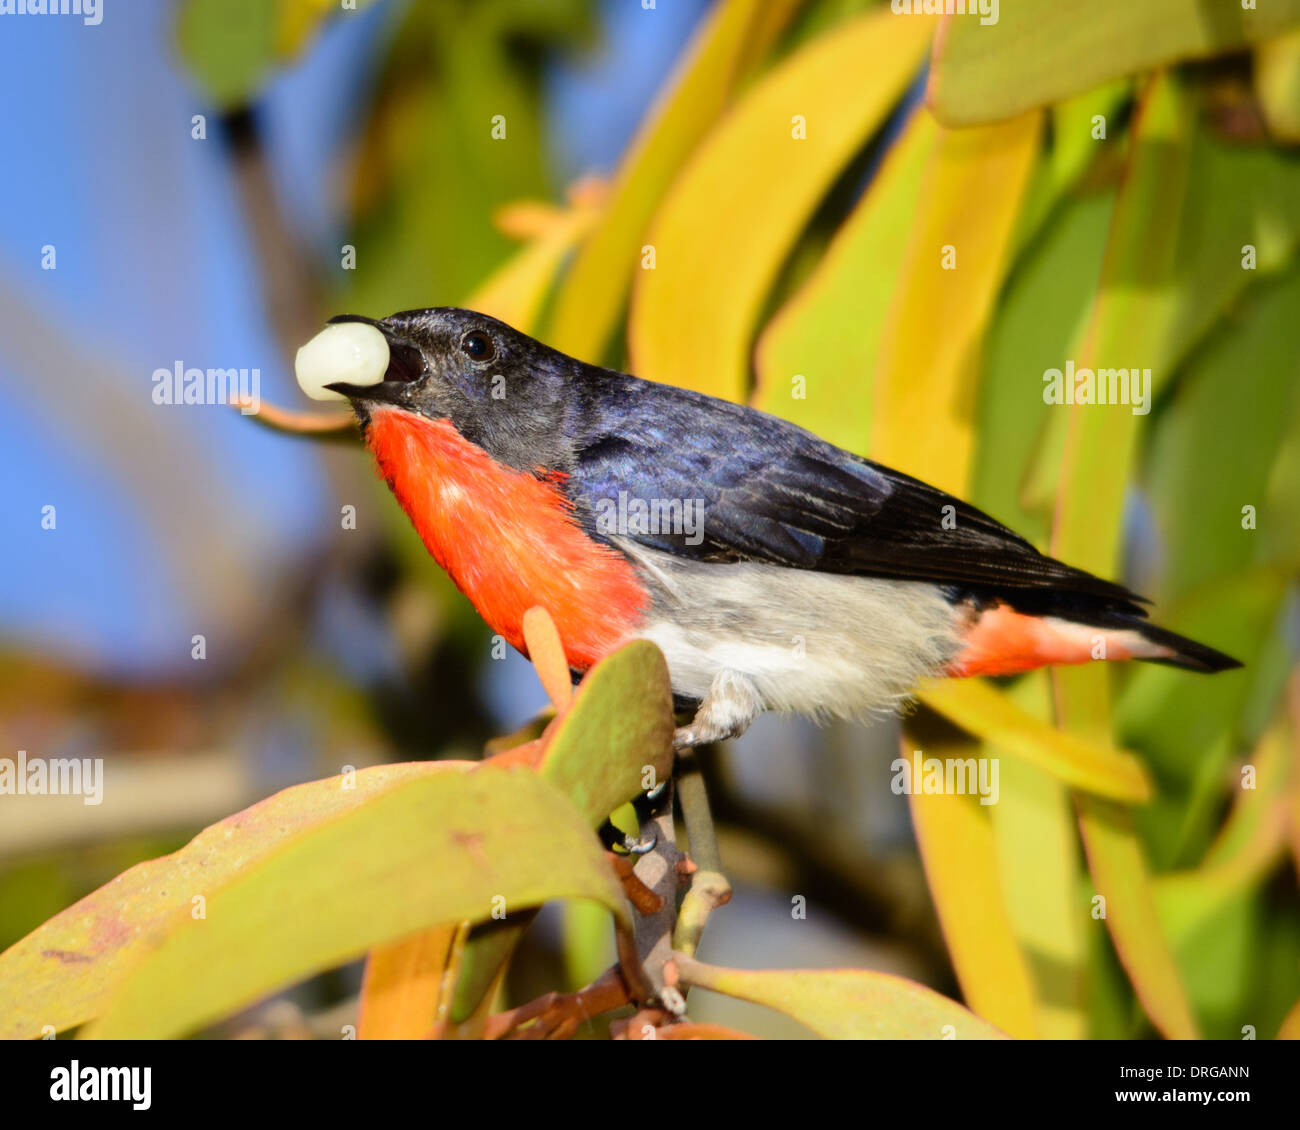 Mistletoebird eating the Mistletoe fruit. Stock Photo